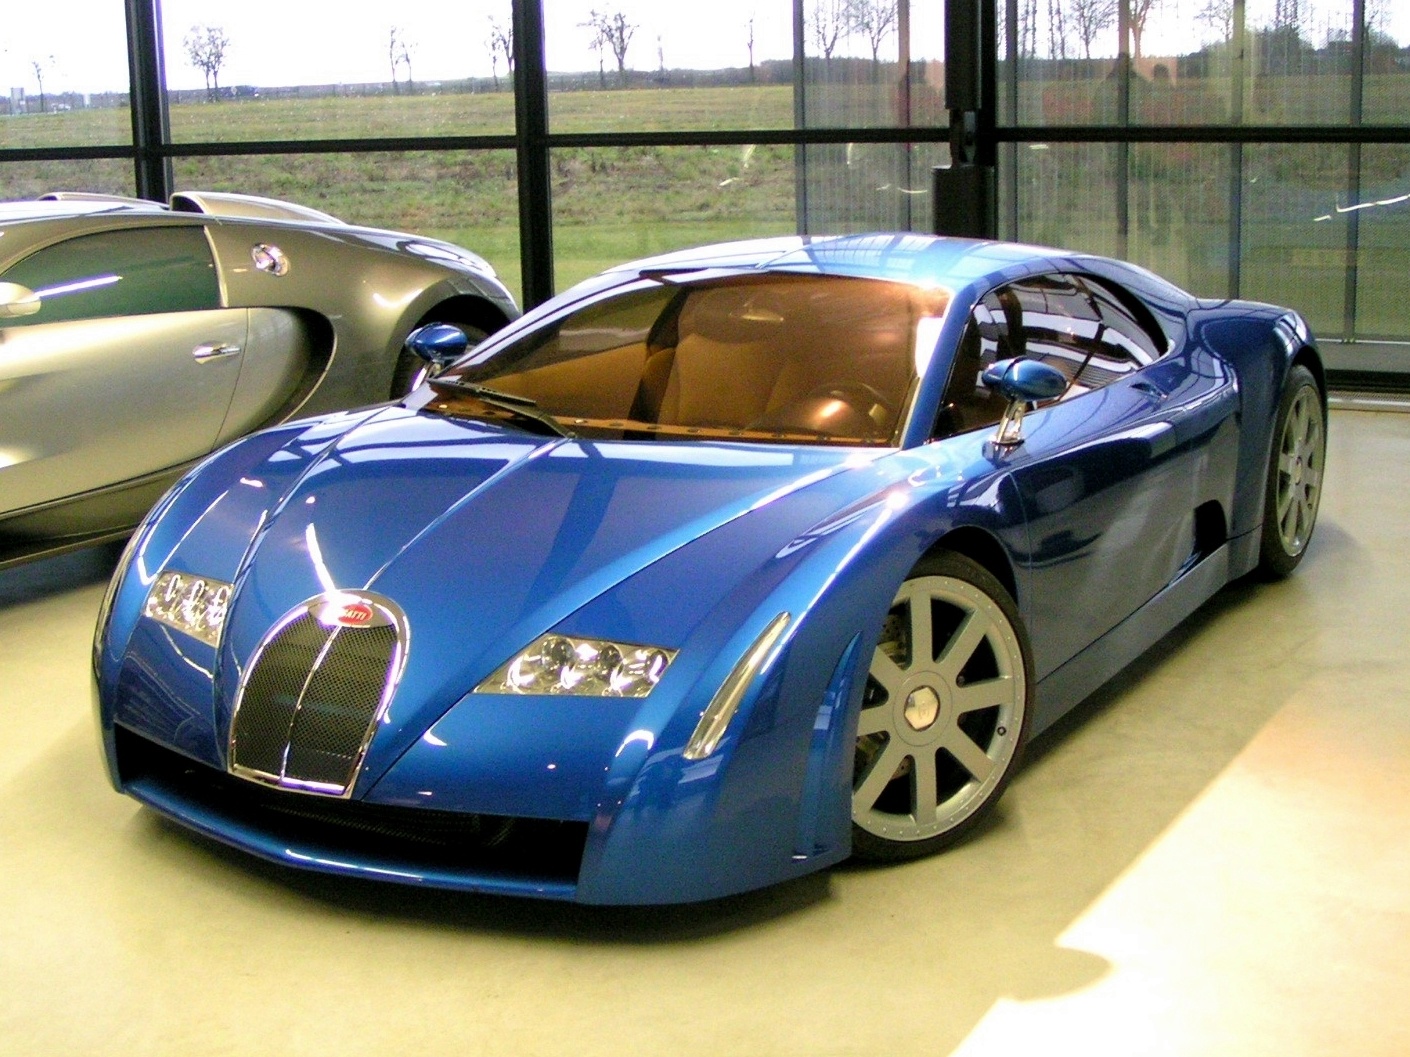 Bugatti đặt tên xe như thế nào?